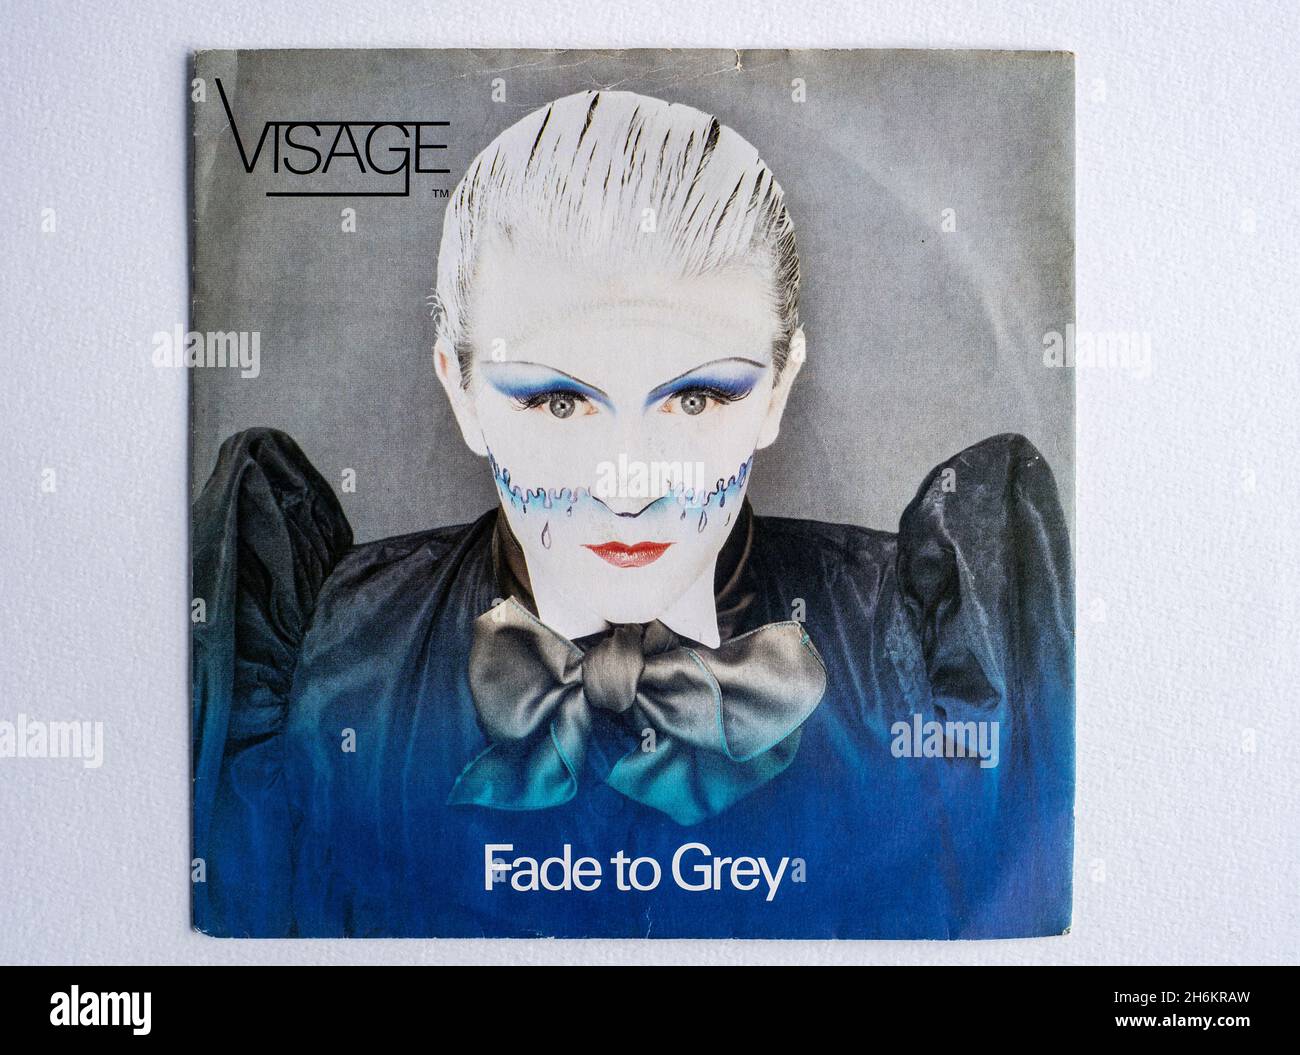 Bildercover der 7-Zoll-Vinyl-Version von Fade To Grey von Visage, die 1980 erschien Stockfoto